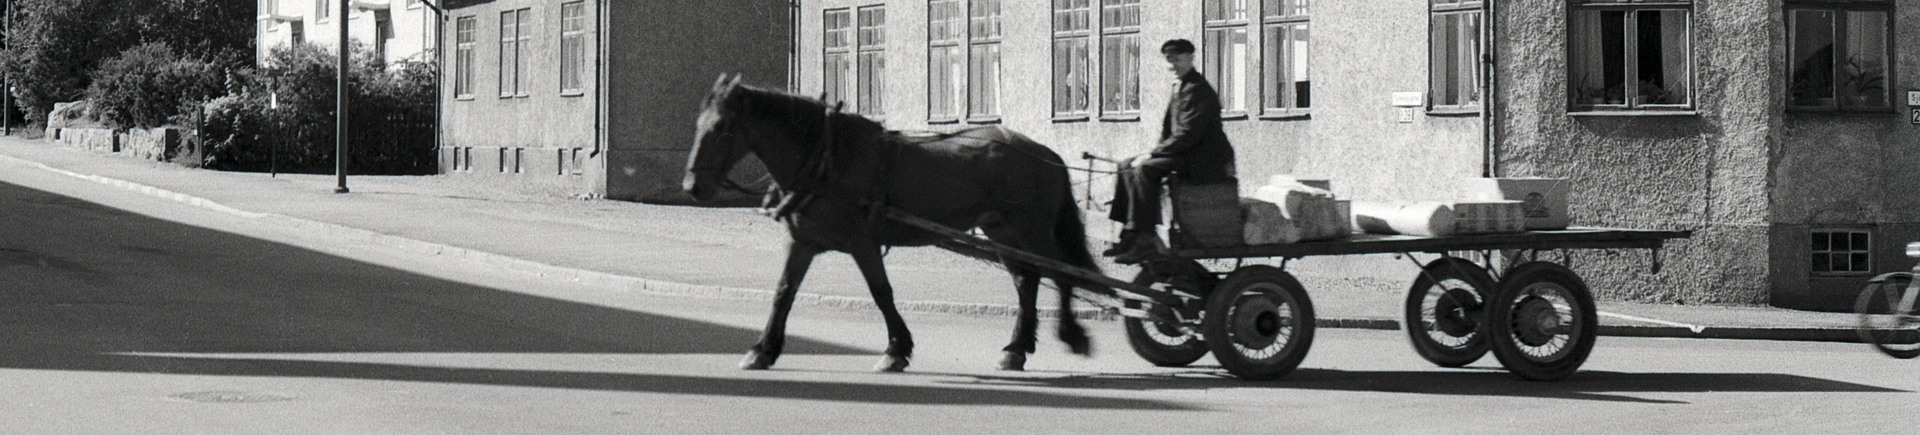 svartvit bild på häst med vagn i stadsmiljö